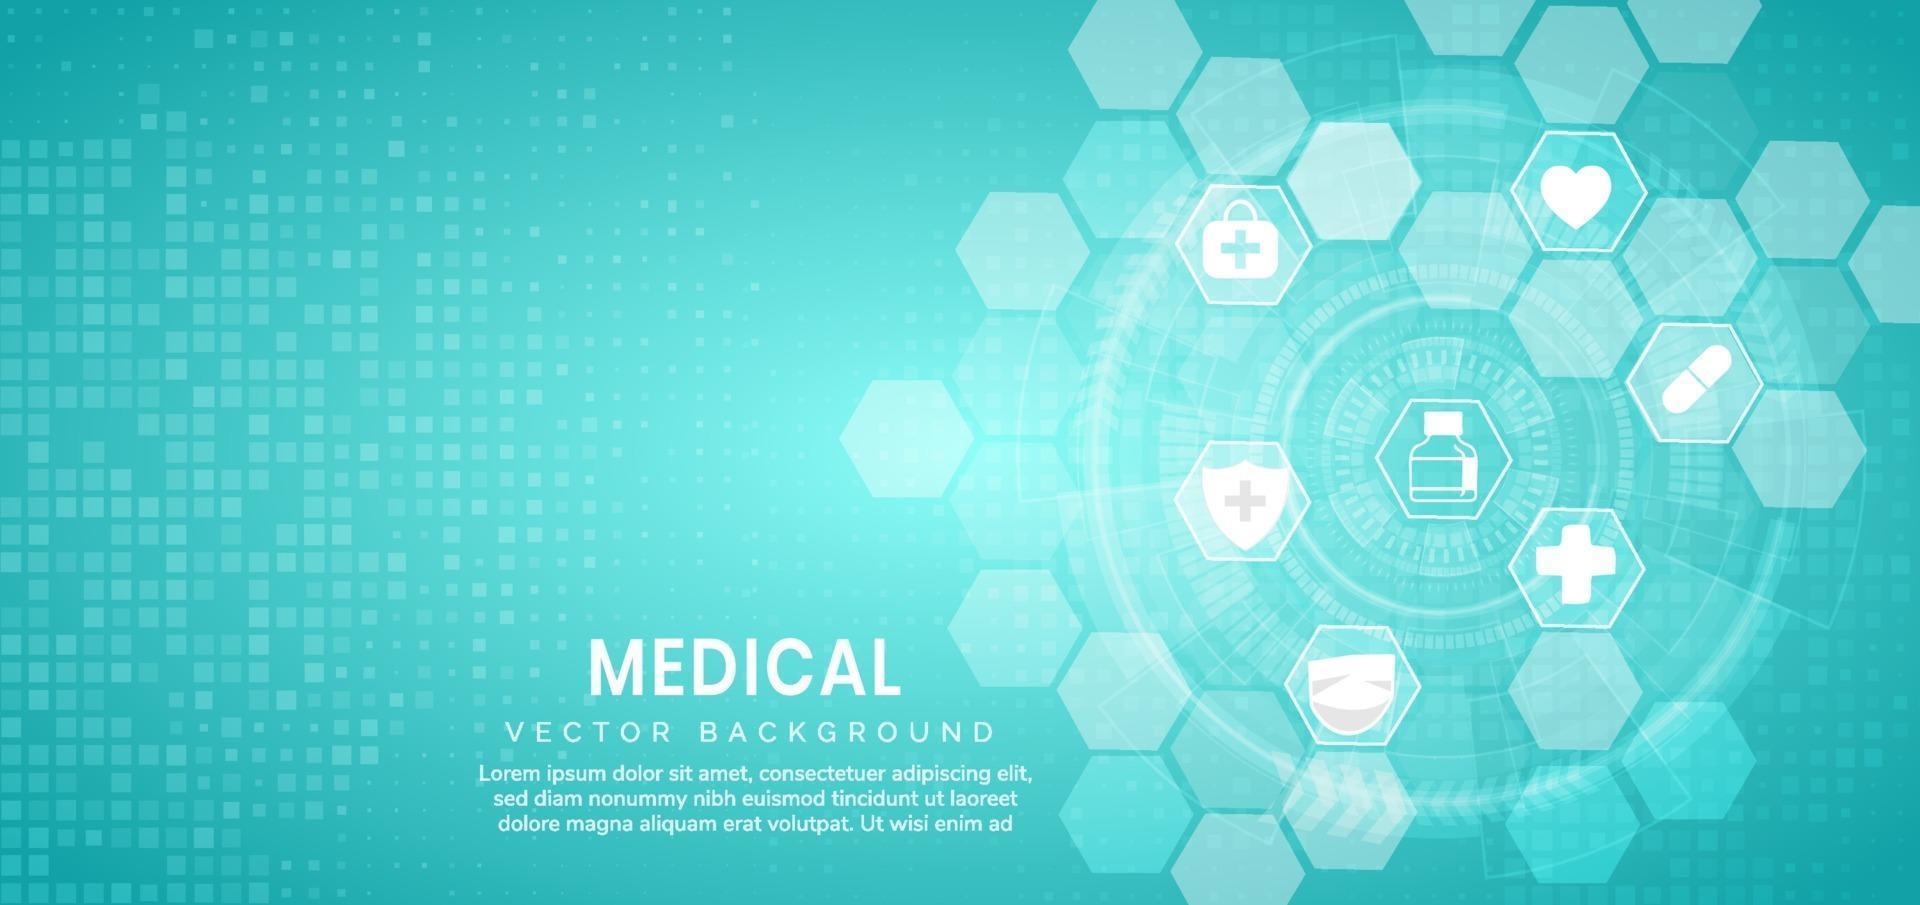 abstracte blauwe zeshoek patroon achtergrond. medische technologie en wetenschap concept en gezondheidszorg pictogram patroon. vector